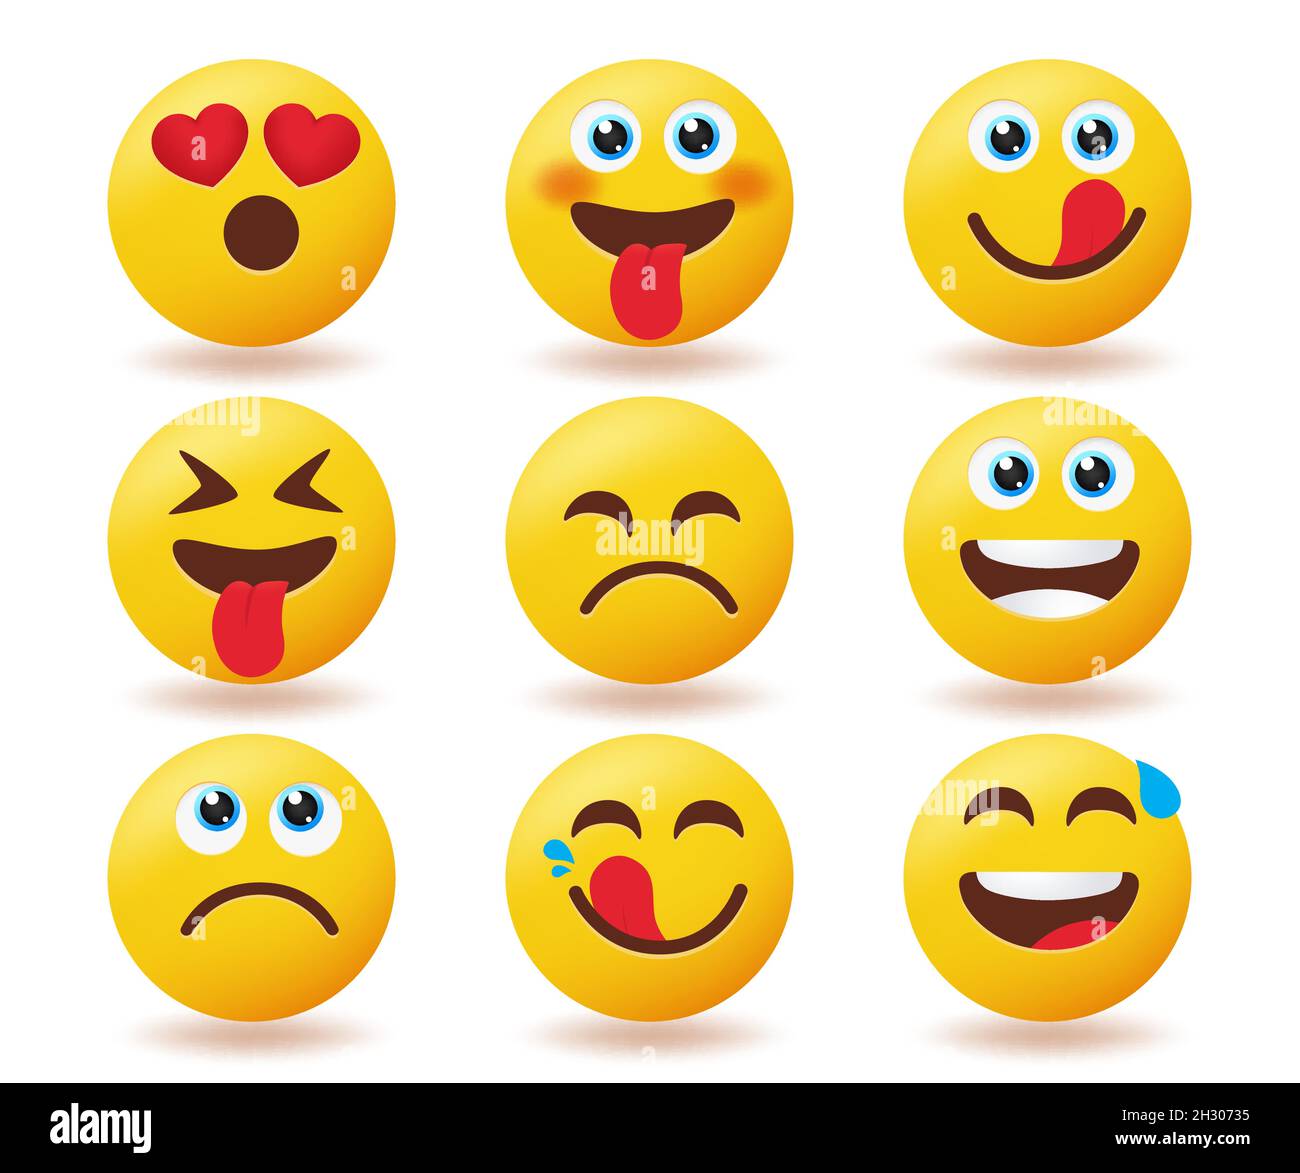 Conjunto De Vectores Emoticones De Smileys Emojis Emoticono En Expresiones De Cara Felices